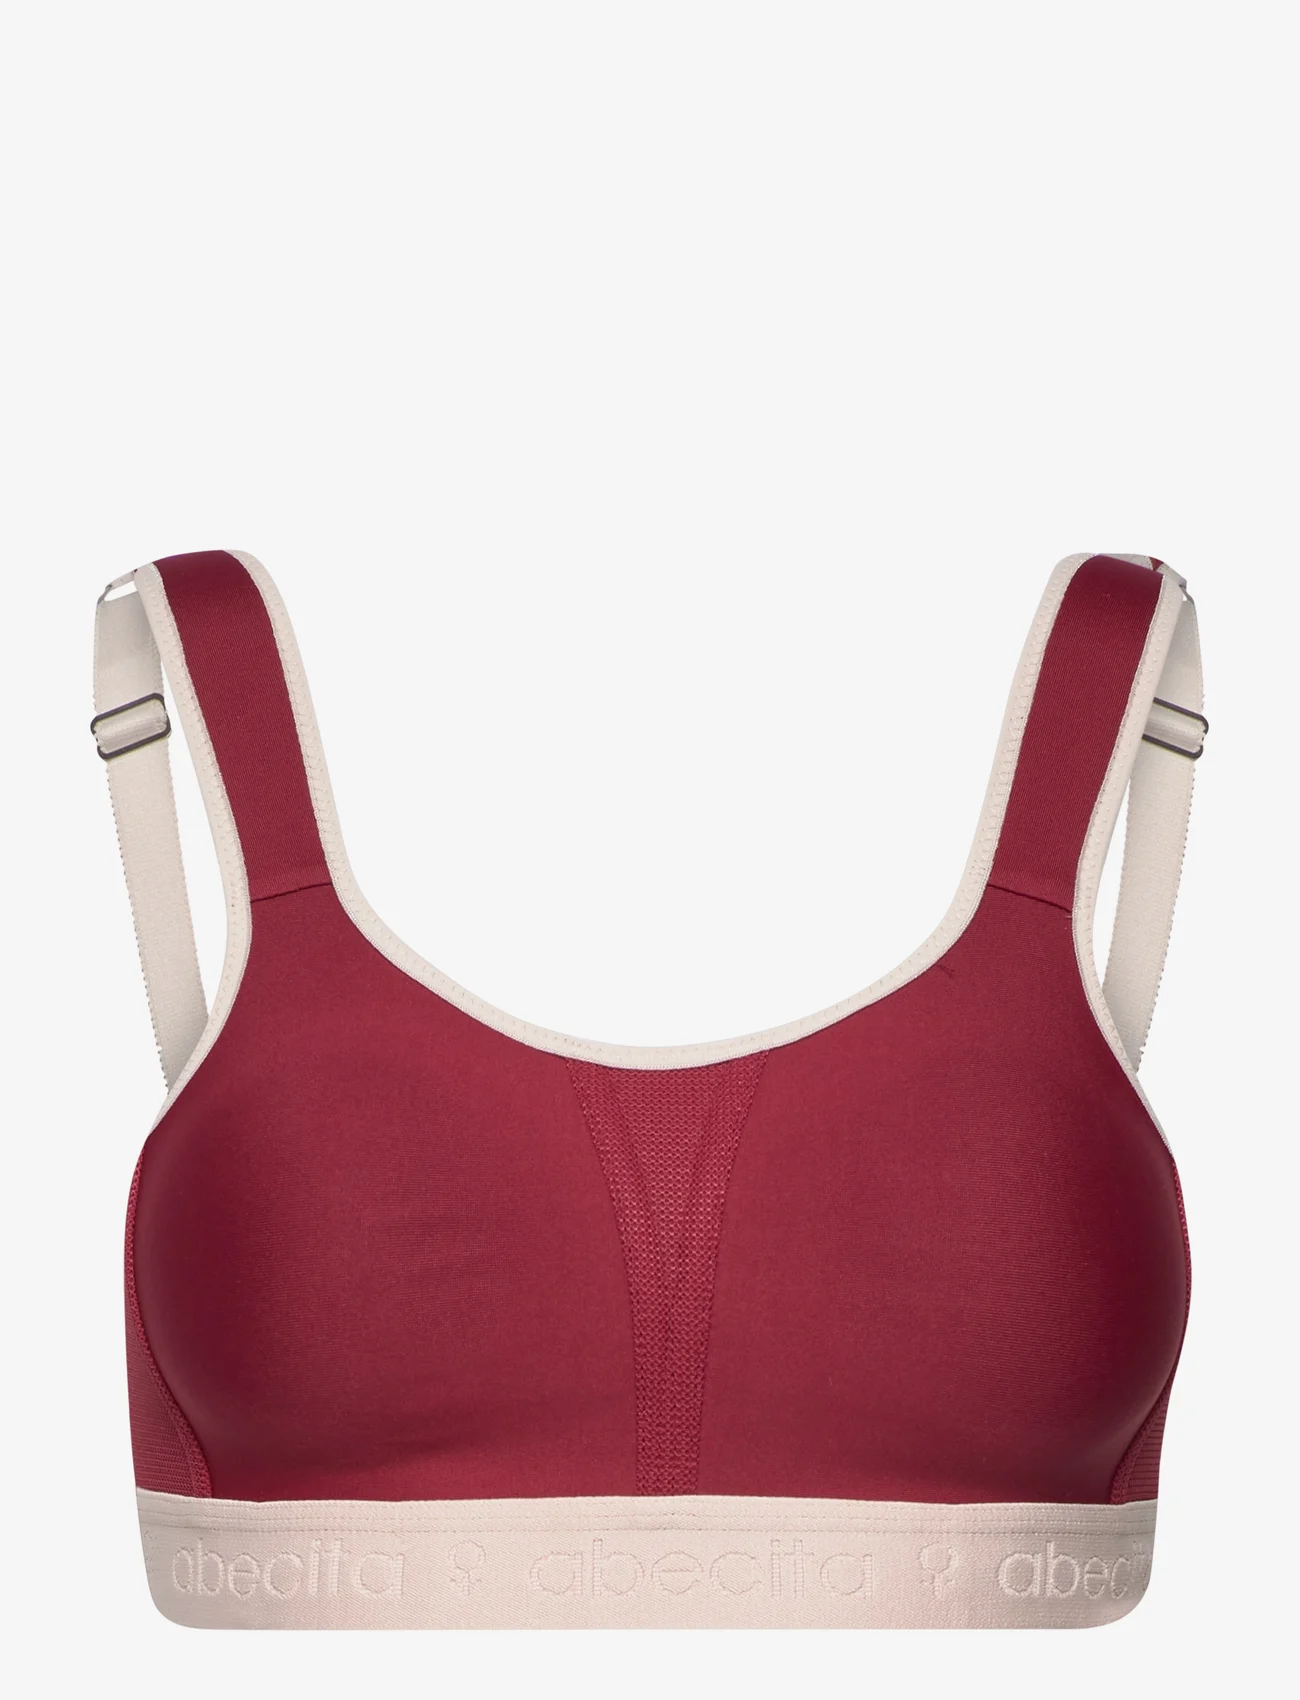 Abecita - Kimberly,Sport bra - sport bras: high support - winered/beige - 0